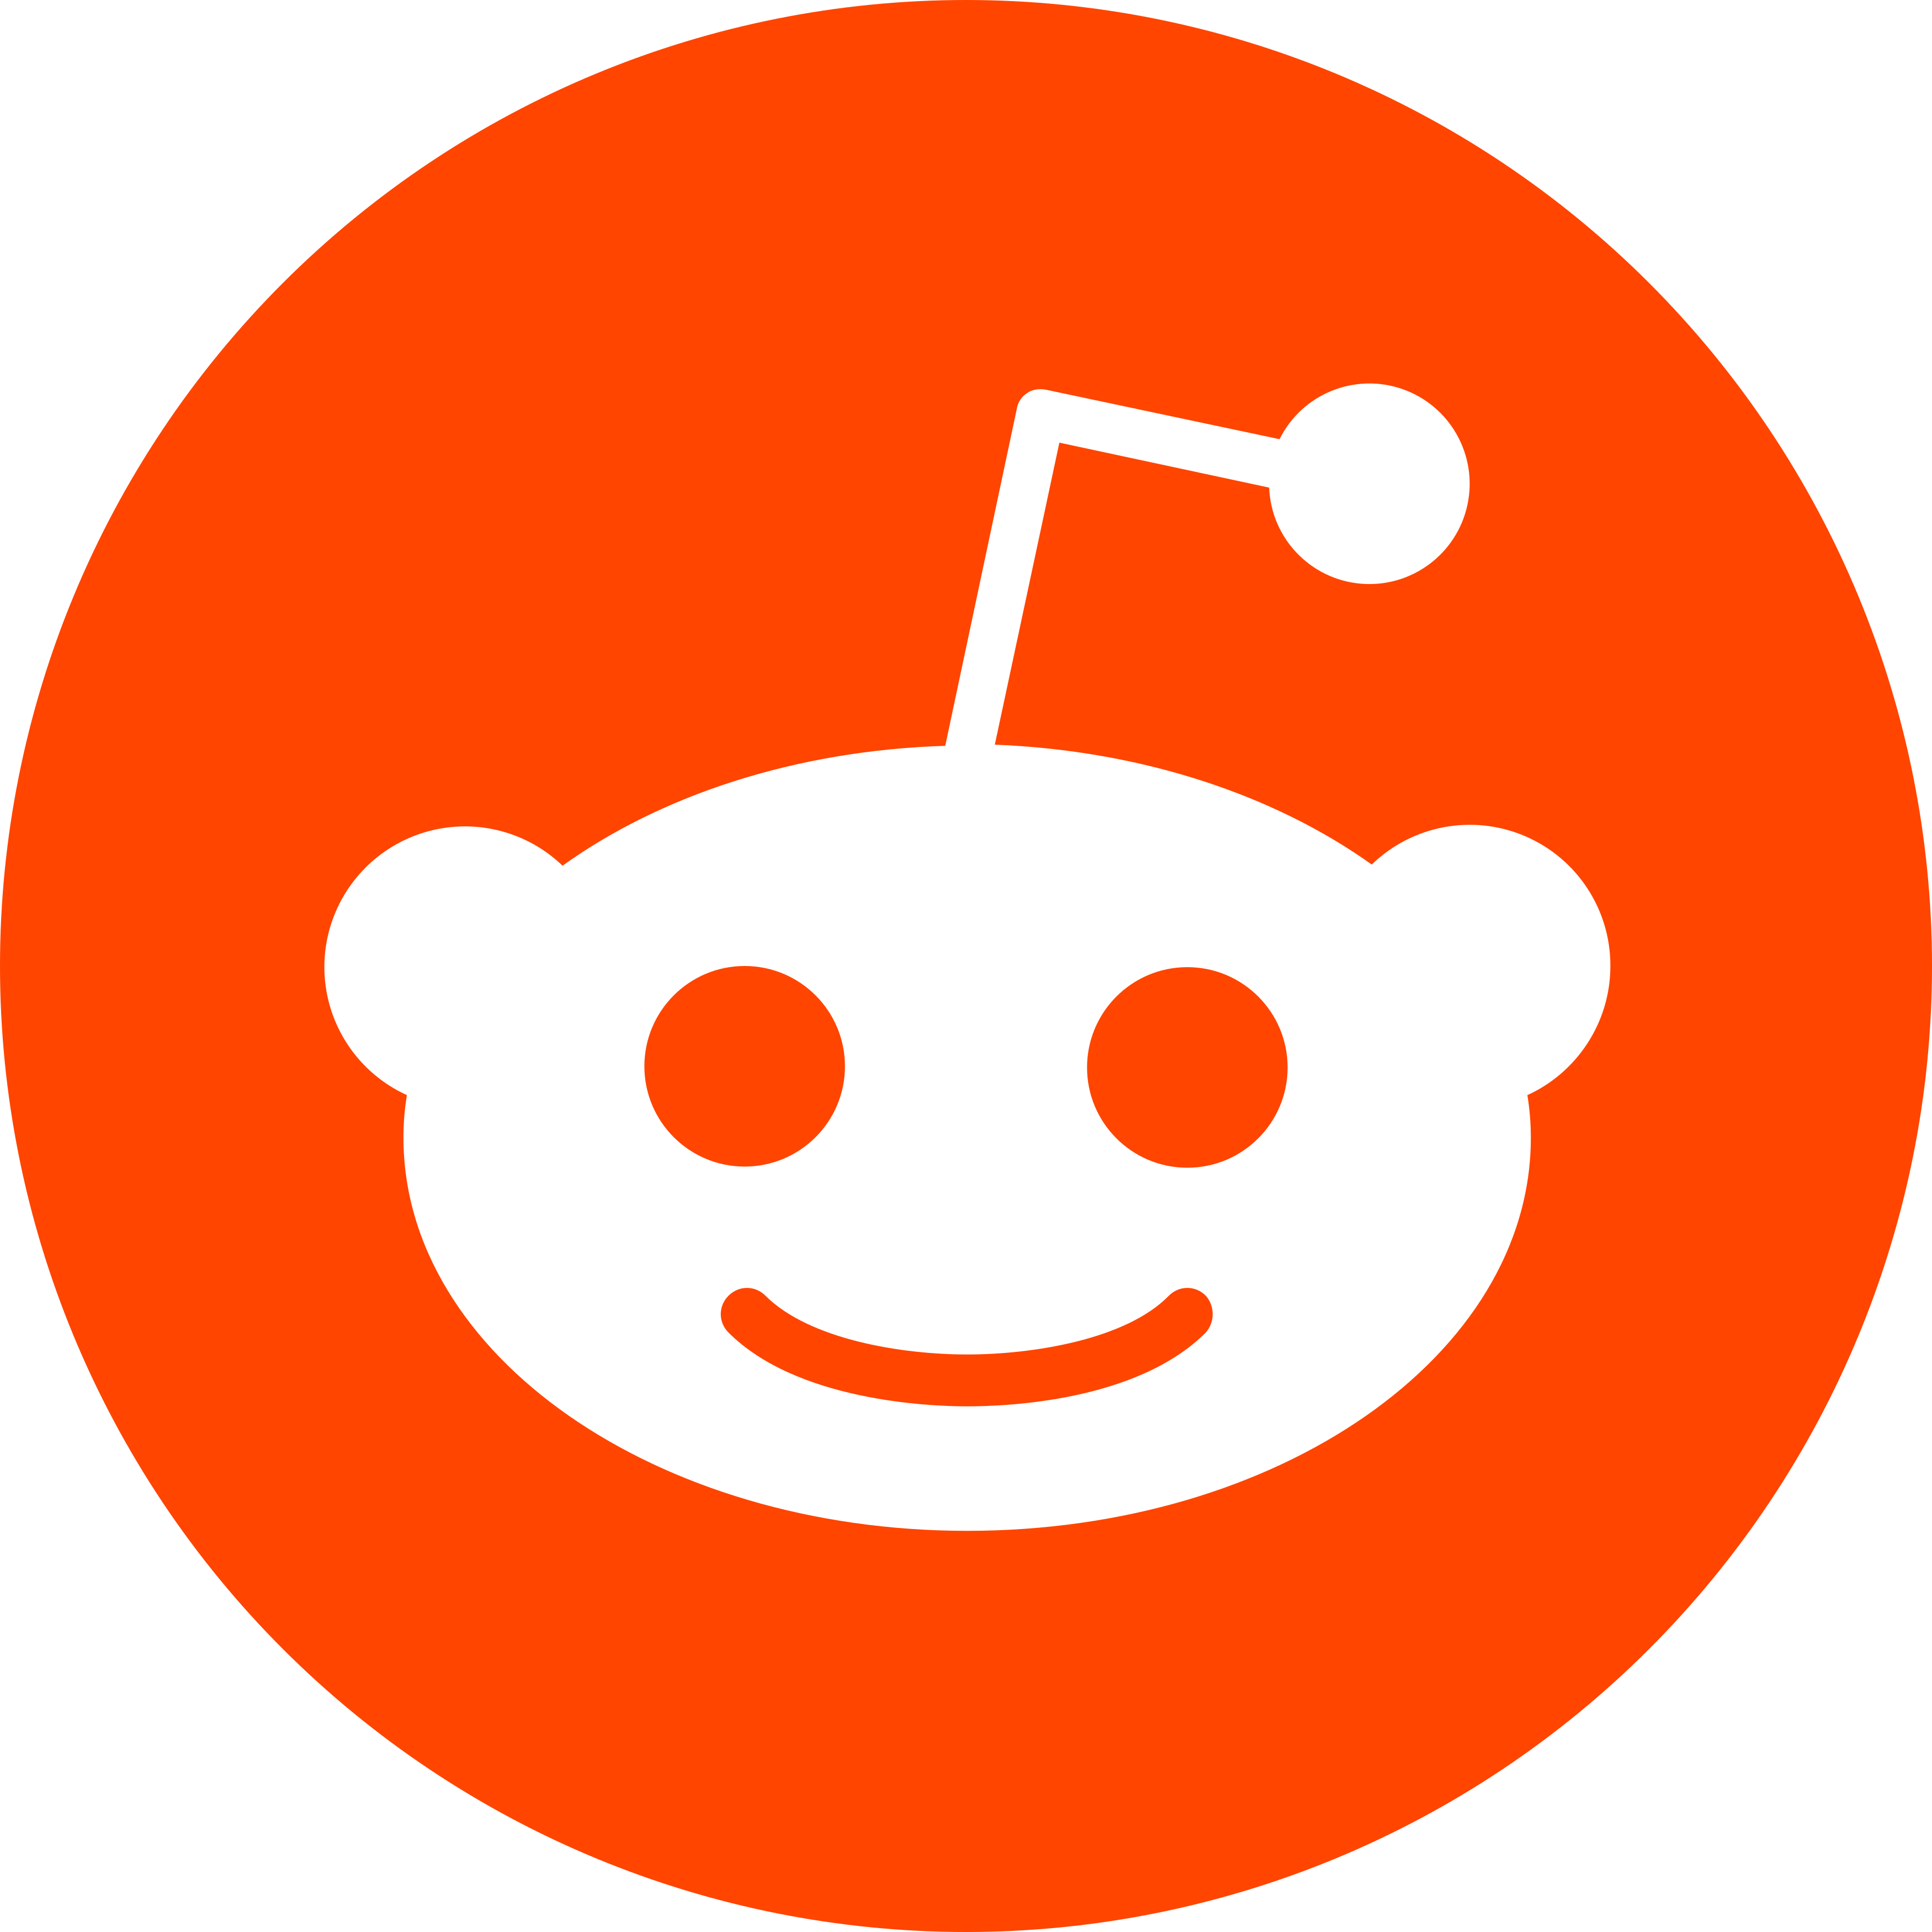 Reddit Logo - Free Logo Icons